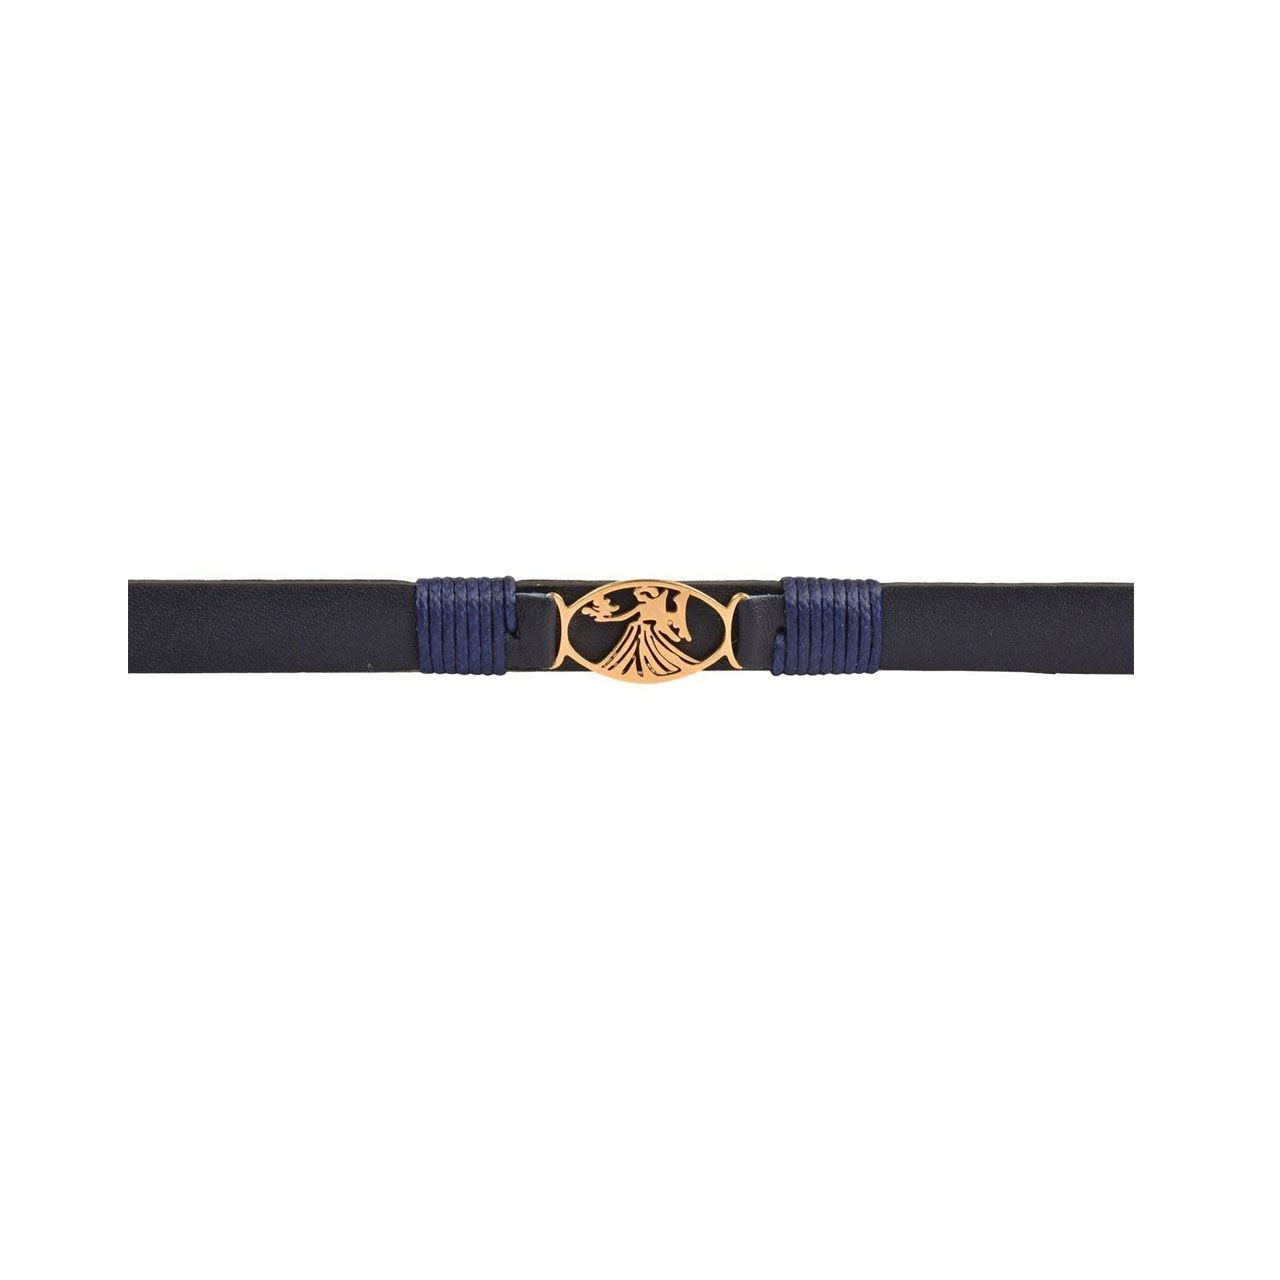 دستبند زنانه پارینه چرم طرح تولد شهریور مدل BR900106 -  - 5